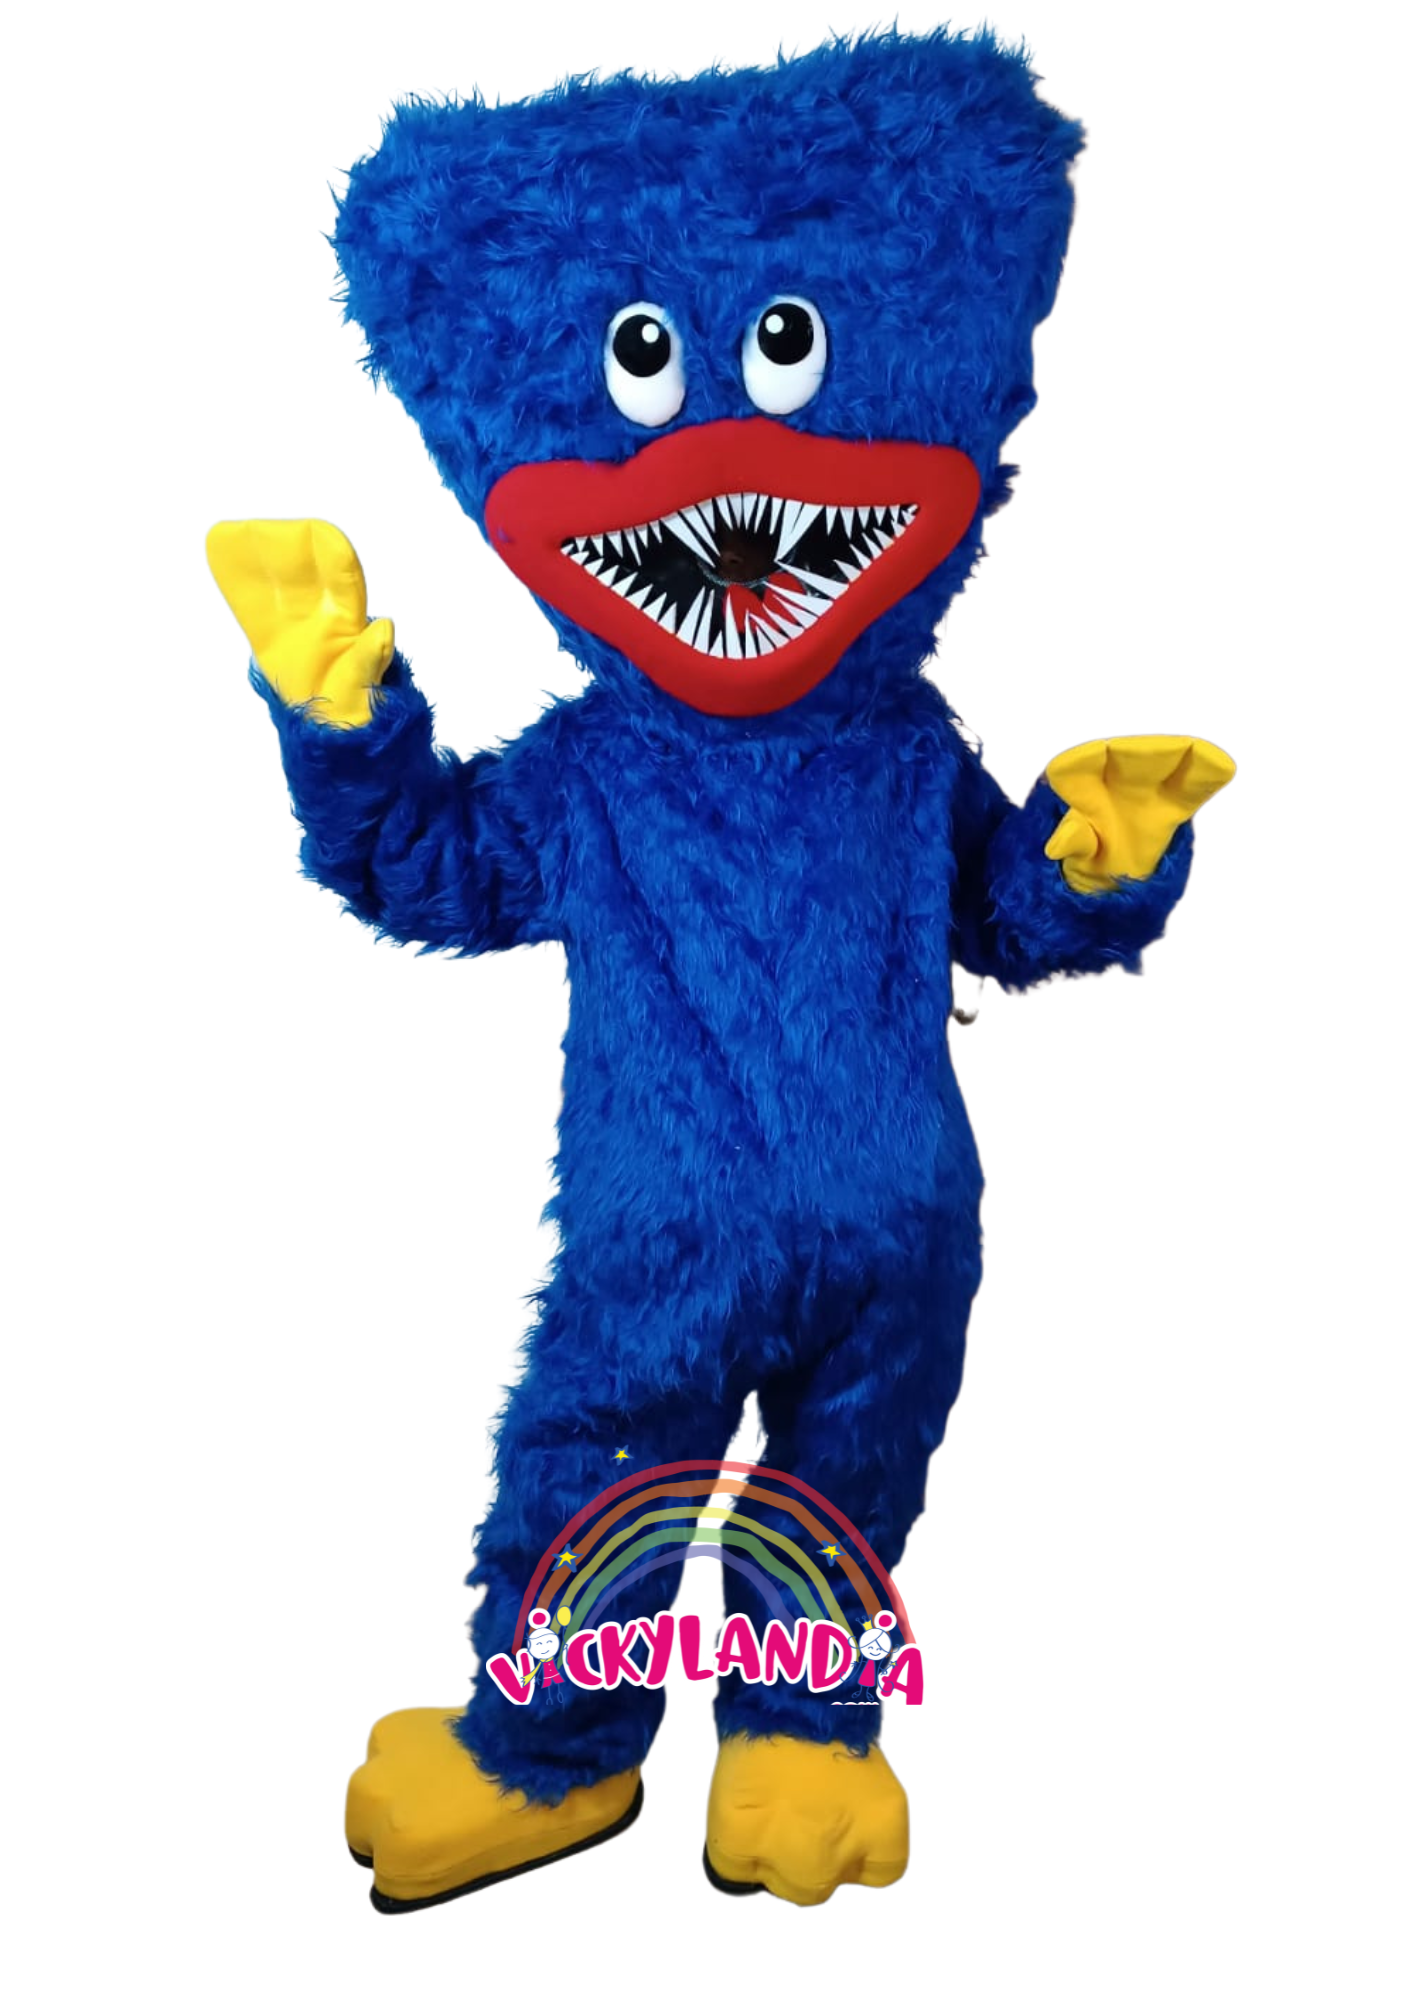 Descubre la magia de nuestro muñeco publicitario de Monstruo de Pesadillas Azul en Vickylandia. Son disfraces cabezones perfectos para fiestas infantiles, shows, cumpleaños, estrategias publicitarias, carnavales, fiestas patronales, espectáculos, cabalgatas y cualquier tipo de evento